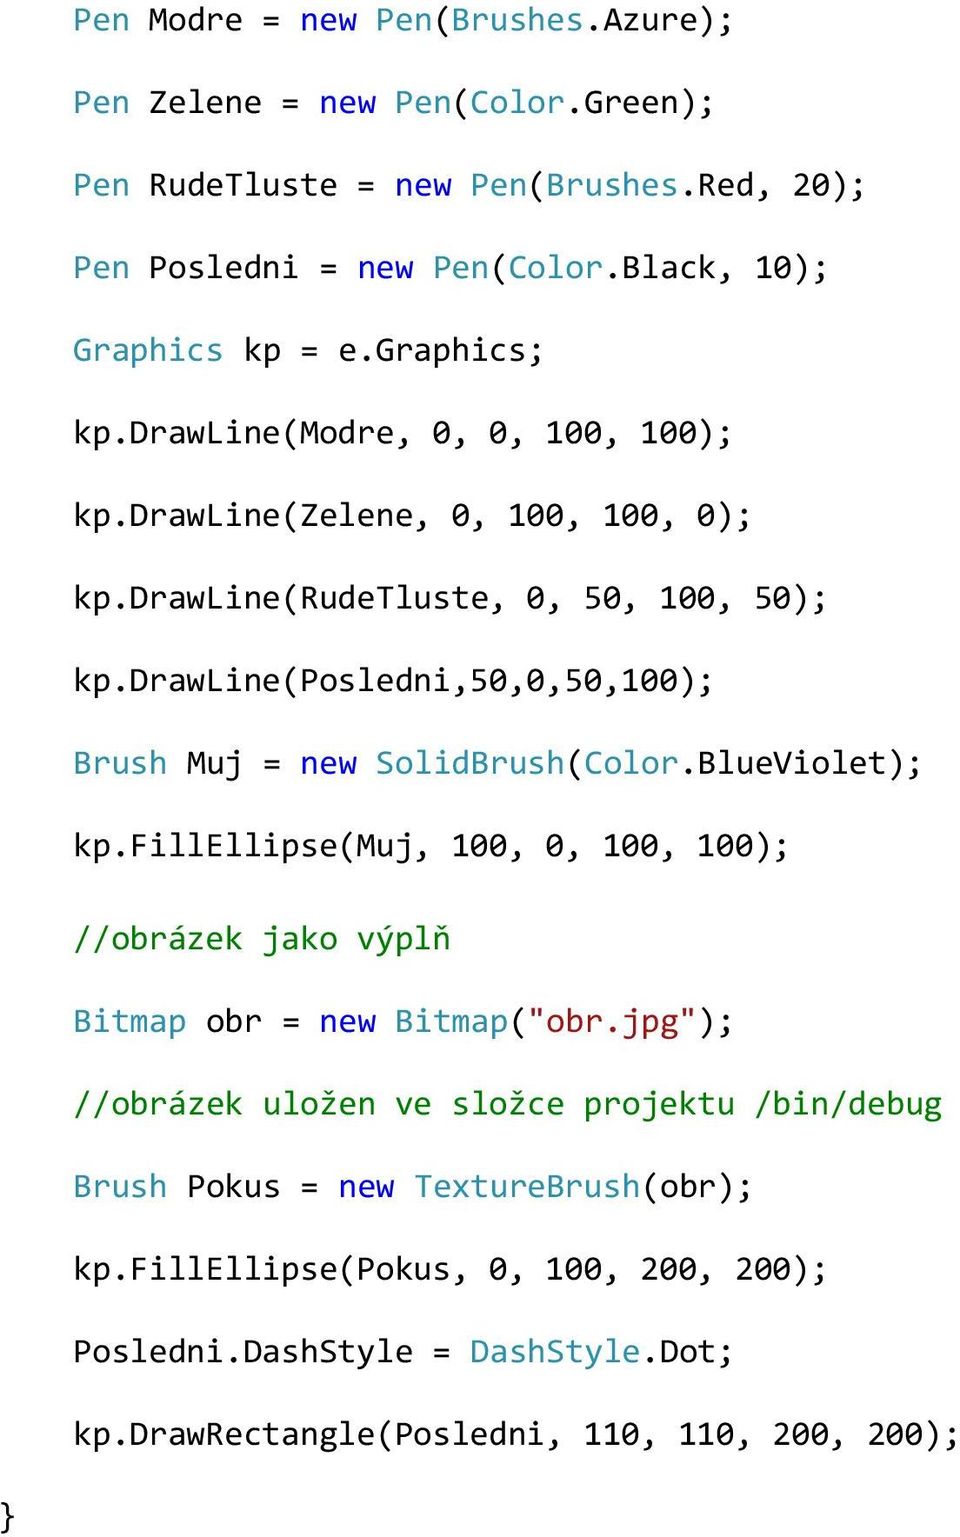 drawline(posledni,50,0,50,100); Brush Muj = new SolidBrush(Color.BlueViolet); kp.fillellipse(muj, 100, 0, 100, 100); //obrázek jako výplň Bitmap obr = new Bitmap("obr.